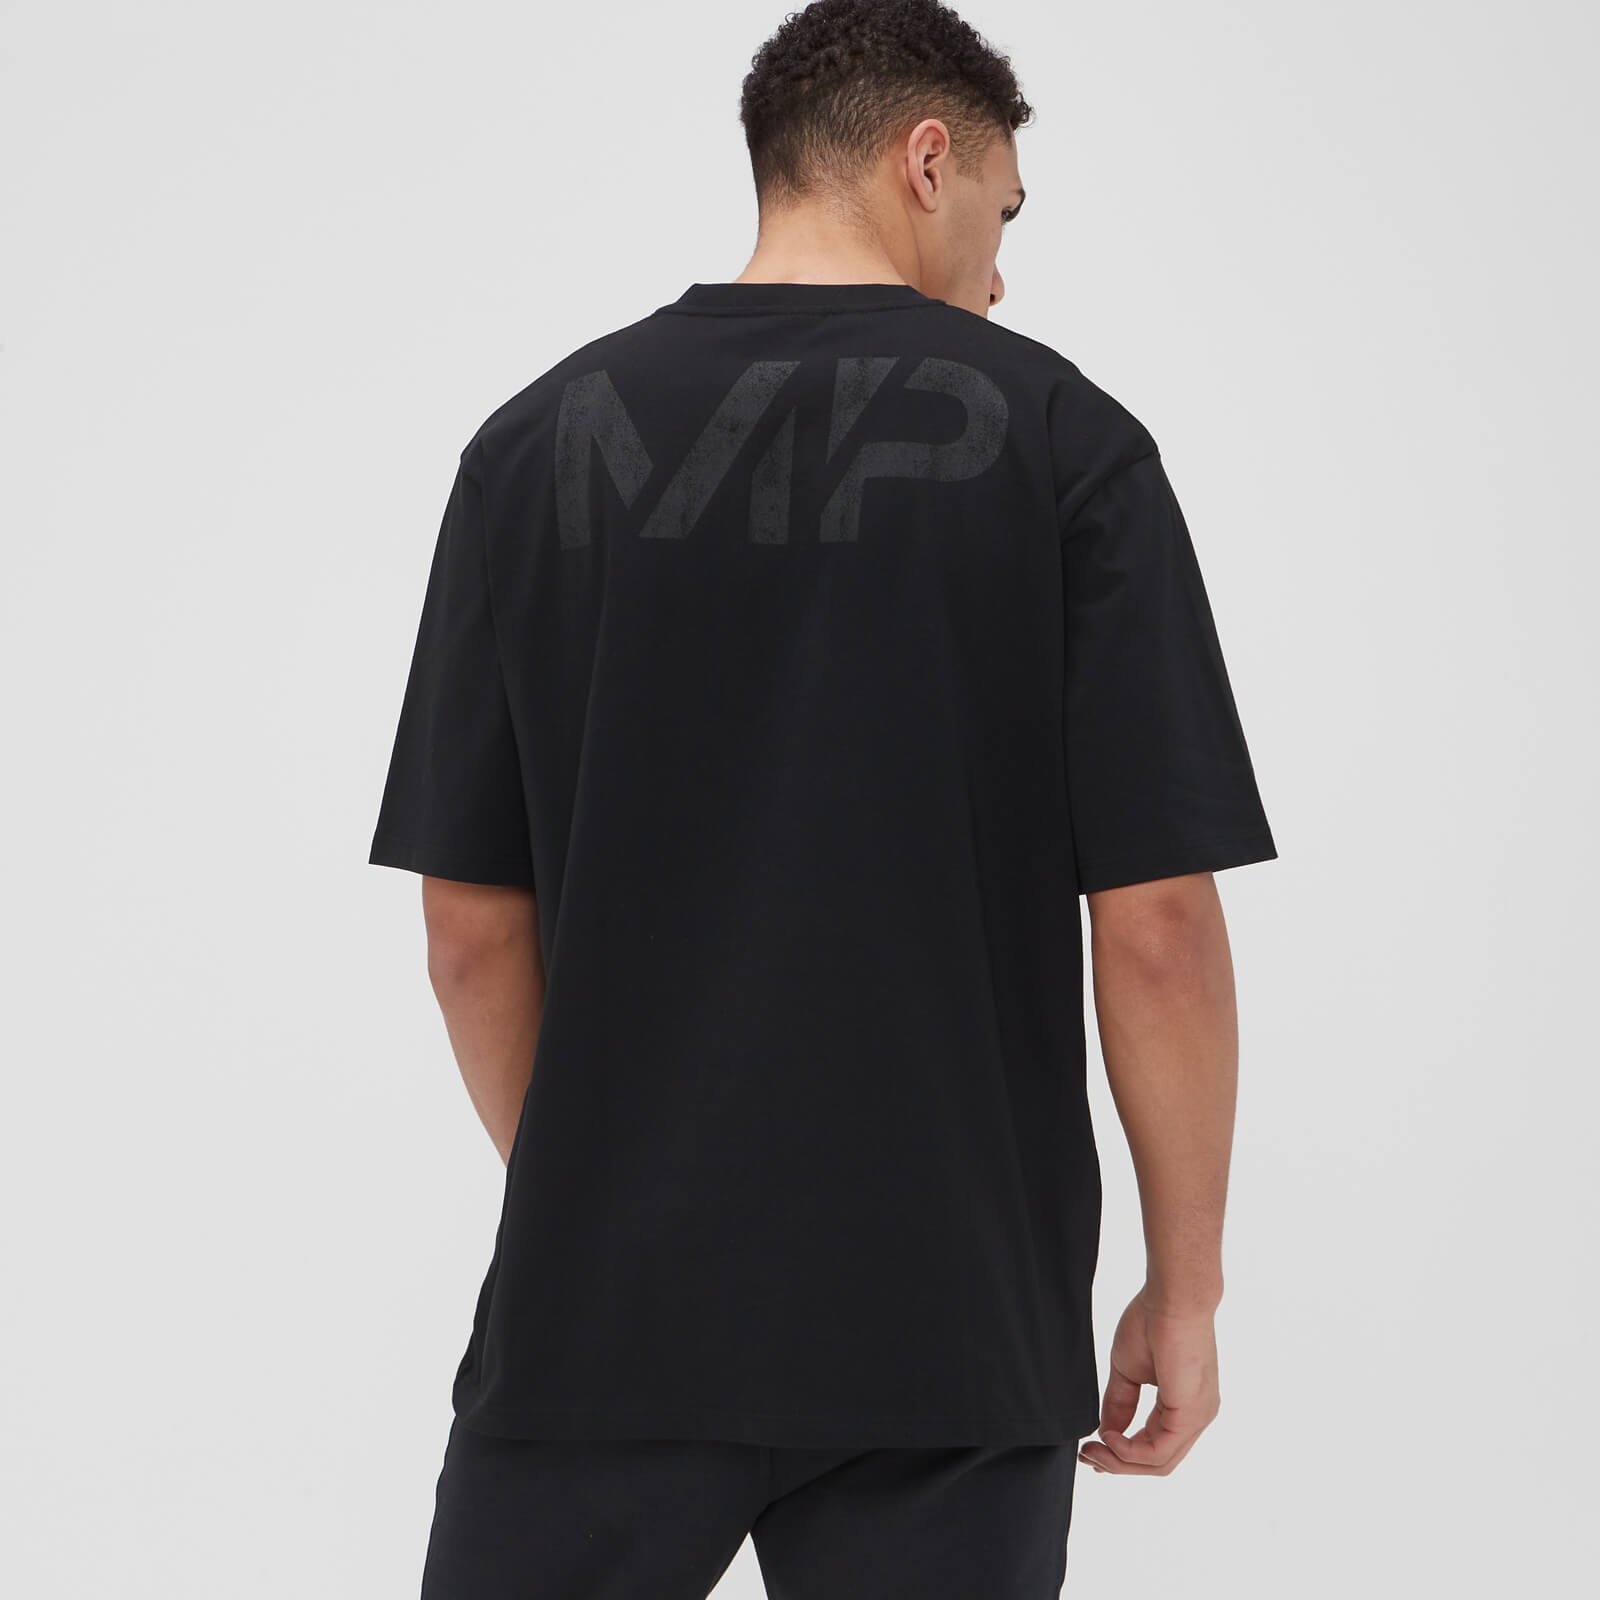 T-shirt Oversize Grit Graphic da MP para Homem - Preto